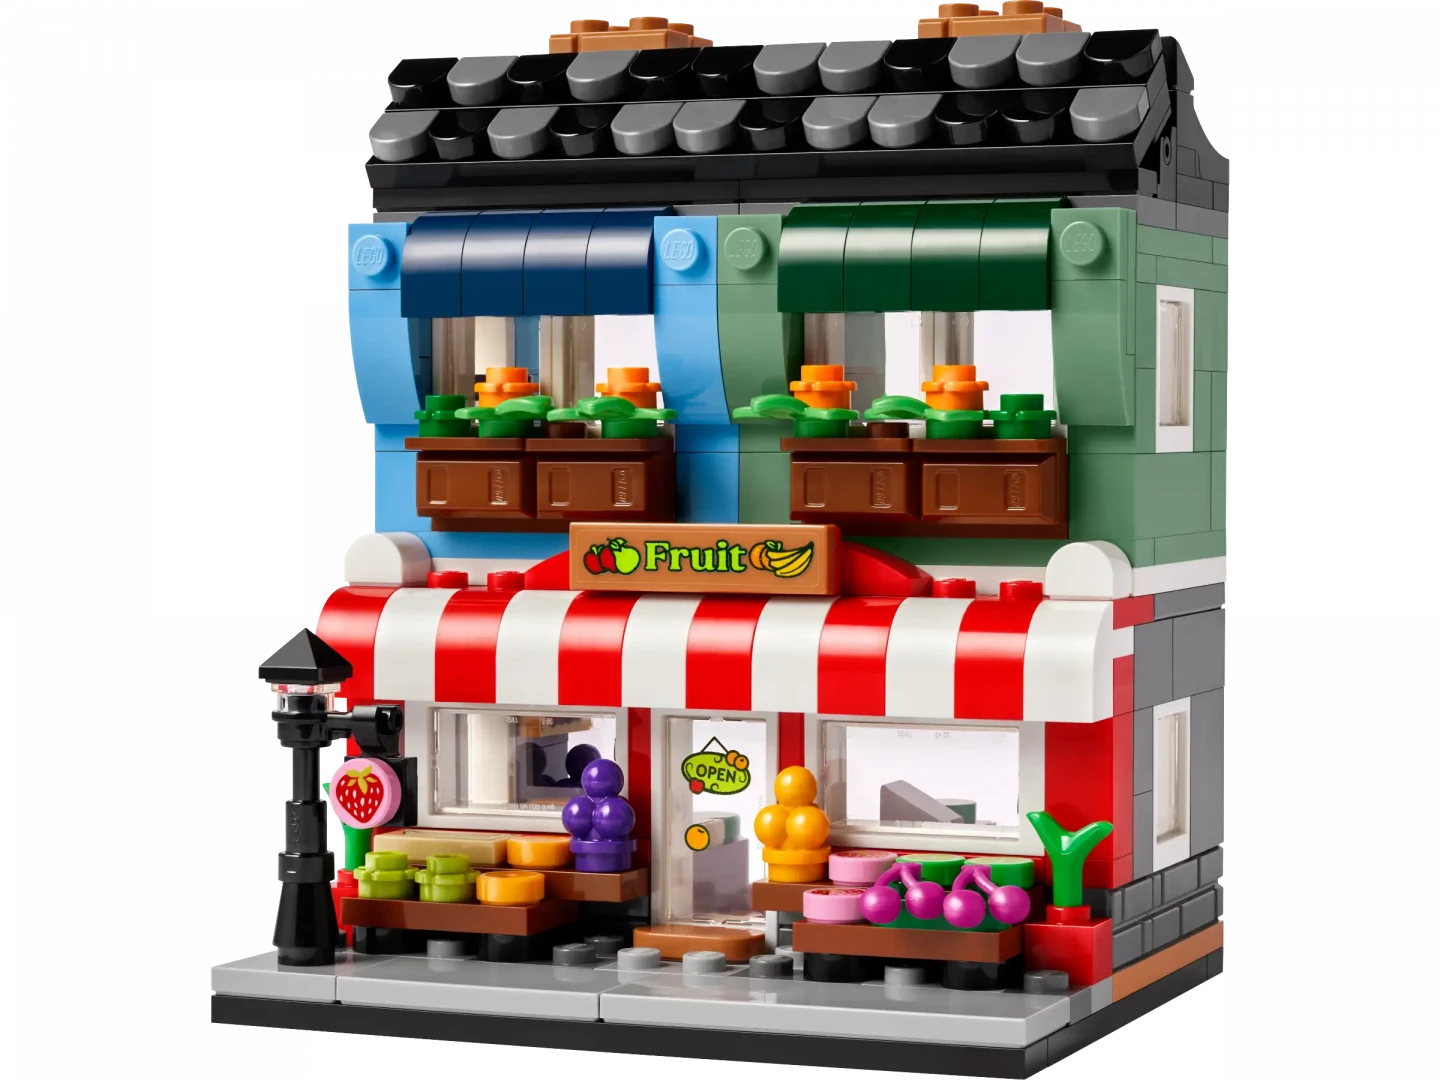 LEGO 40684 Fruit Store - Gratis bij aankopen vanaf €200!